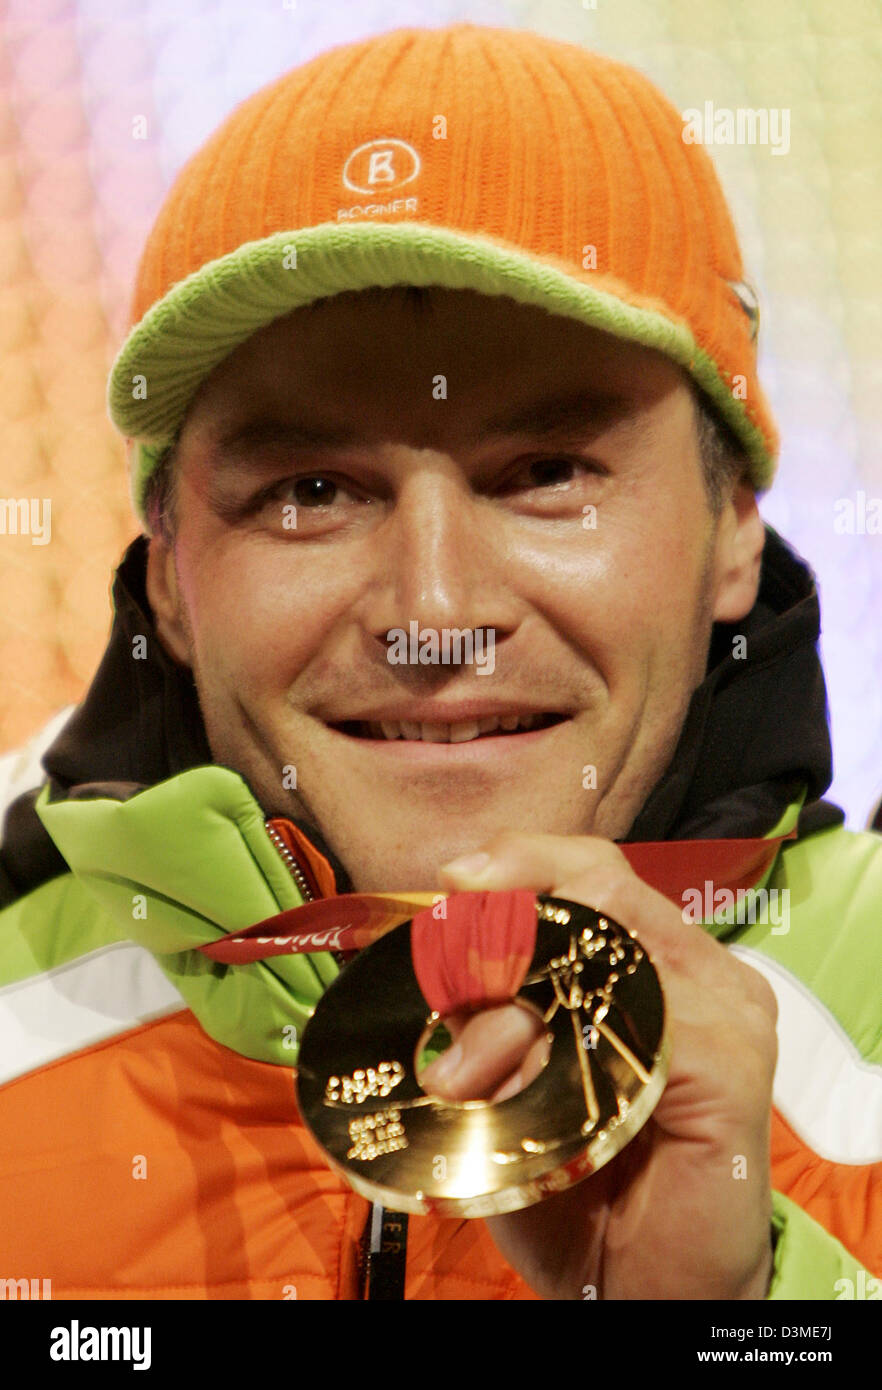 Biatleta tedesco Sven Fischer presenta il suo oro olimpico dopo la cerimonia di premiazione si terrà a Torino, Italia, Martedì, 14 febbraio 2006. Fischer ha vinto il maschile di biathlon event oltre dieci chilometri. Foto: Frank può Foto Stock